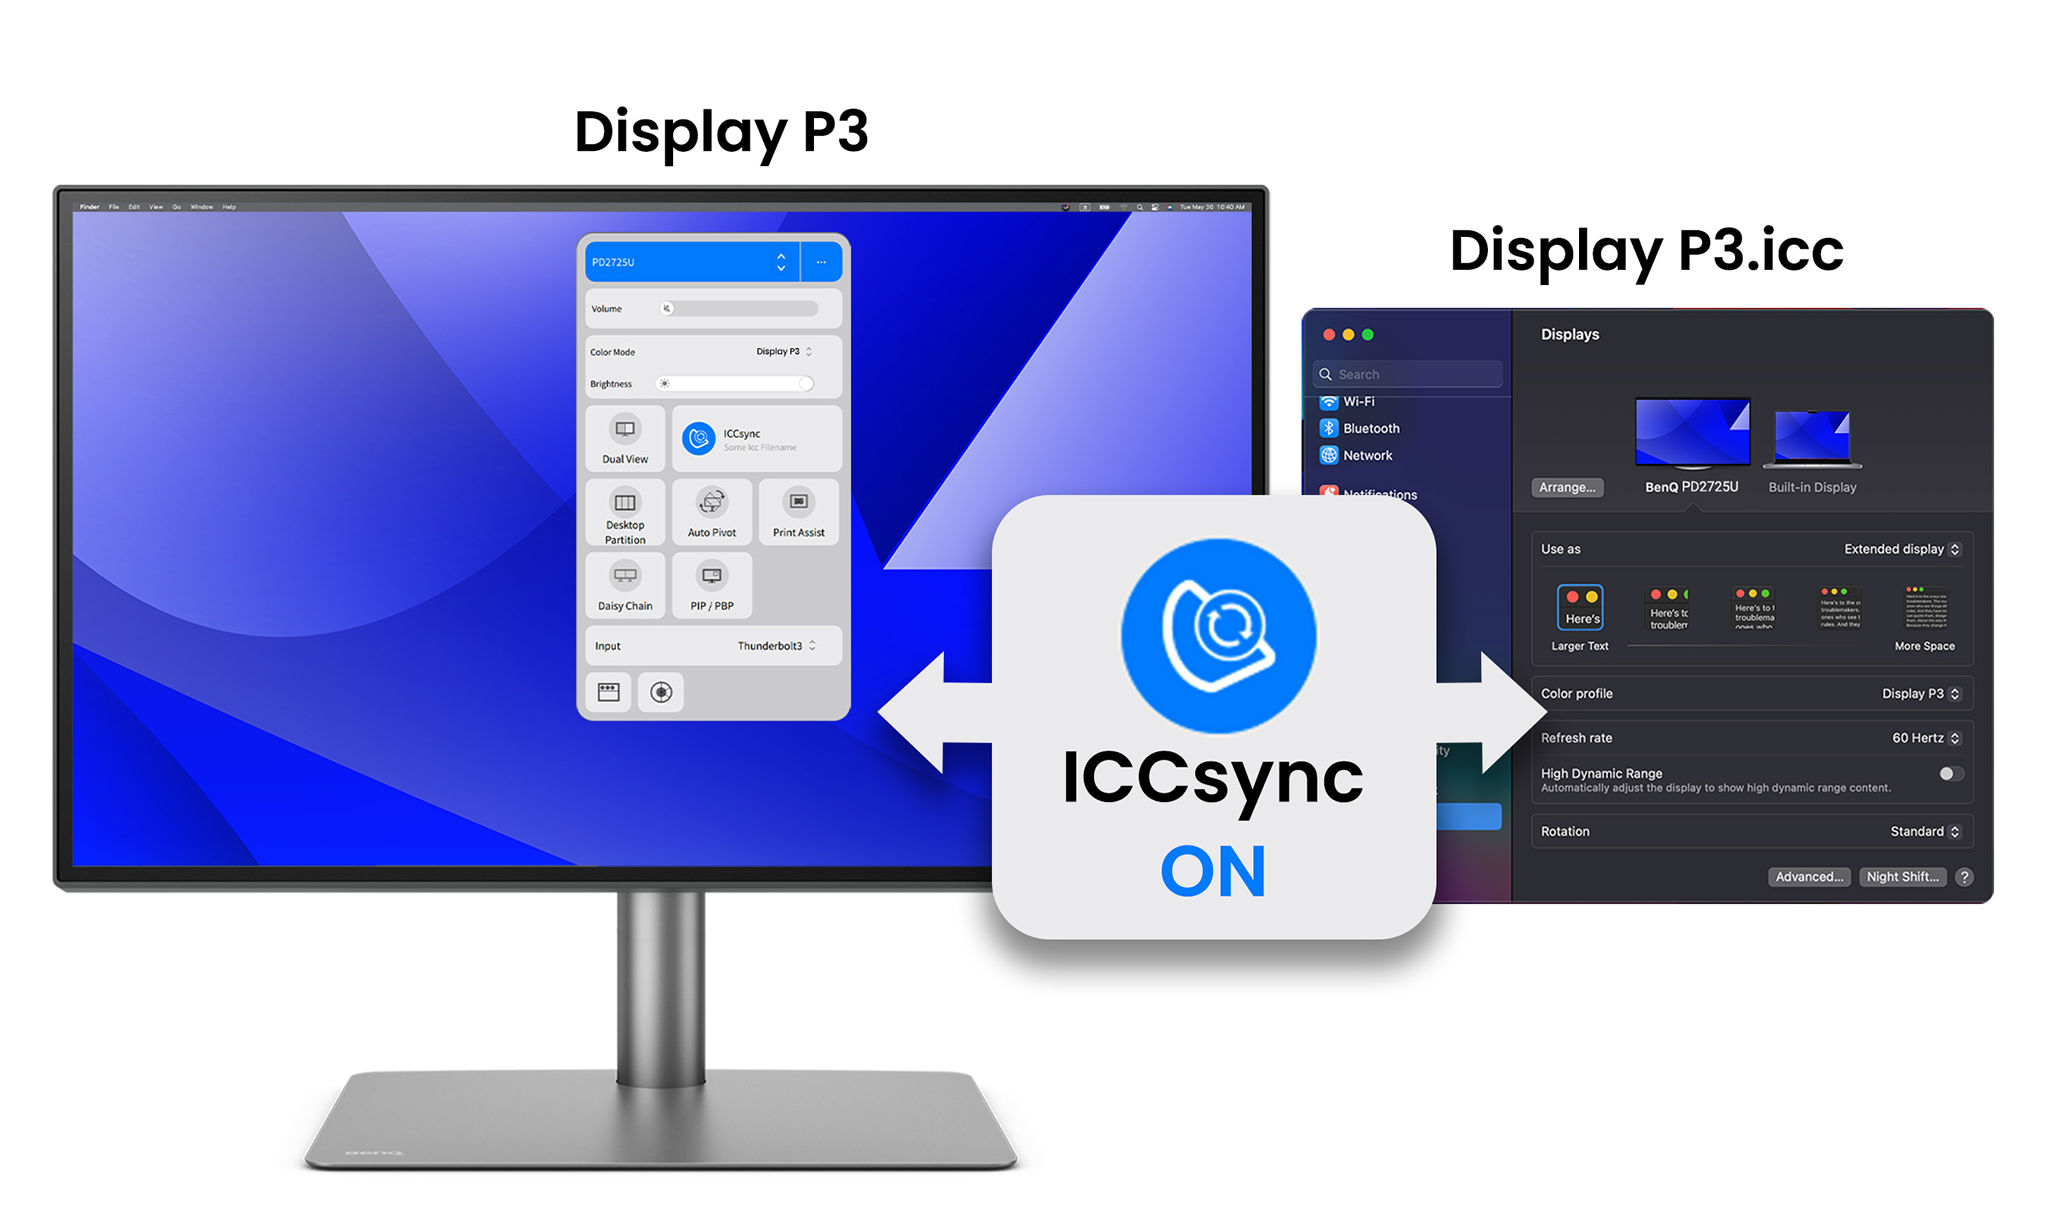 Keičiant spalvų režimus, „BenQ ICCsync“ automatiškai suderina ir sinchronizuoja ICC profilius ne tik pačiame monitoriuje, bet ir tarp „Mac“ kompiuterio bei „BenQ“ monitoriaus. Ir visa tai vyksta akimirksniu.